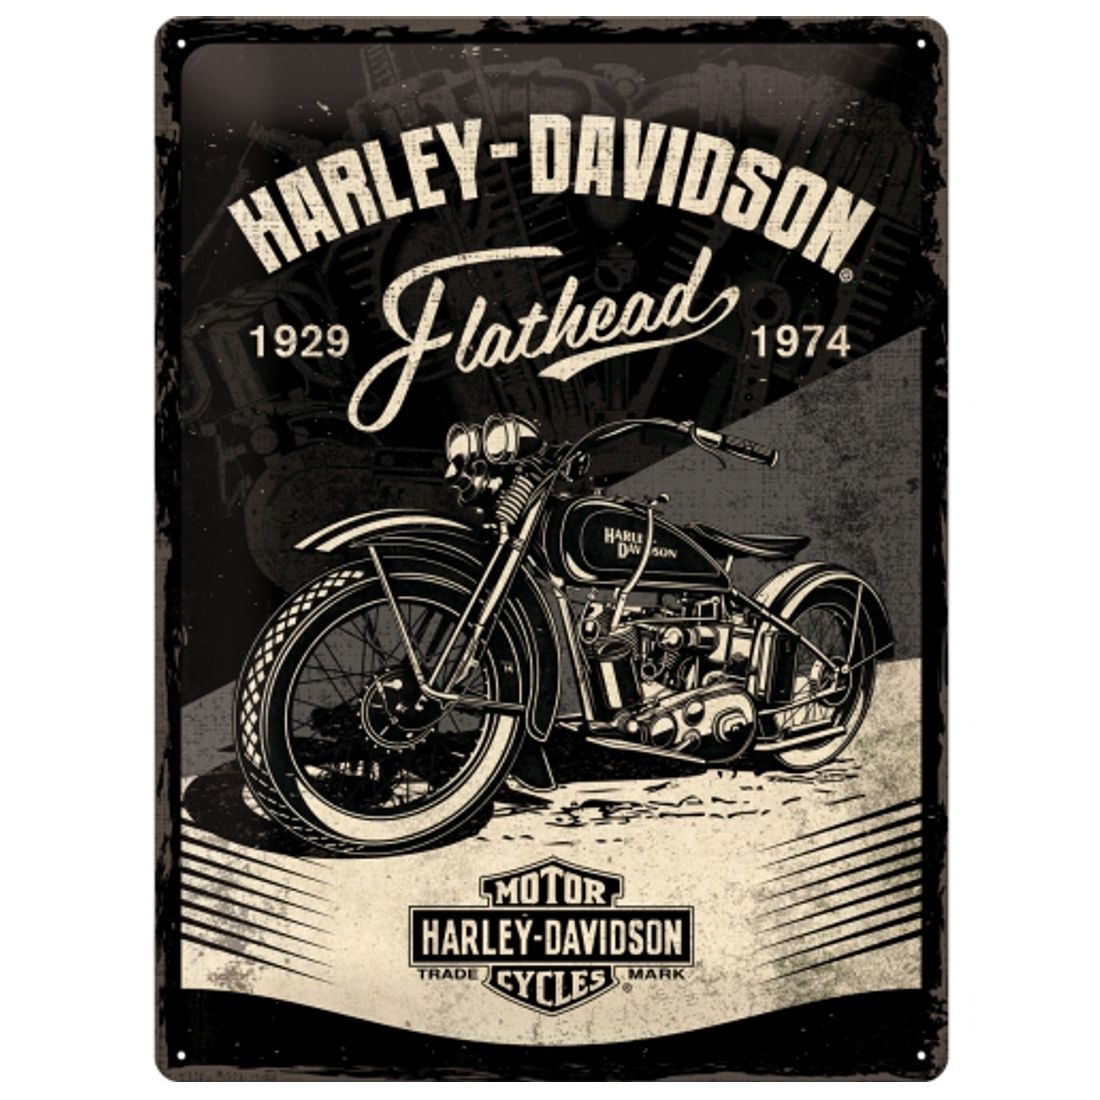 Blechschild - Harley Davidson - Flathead, Black